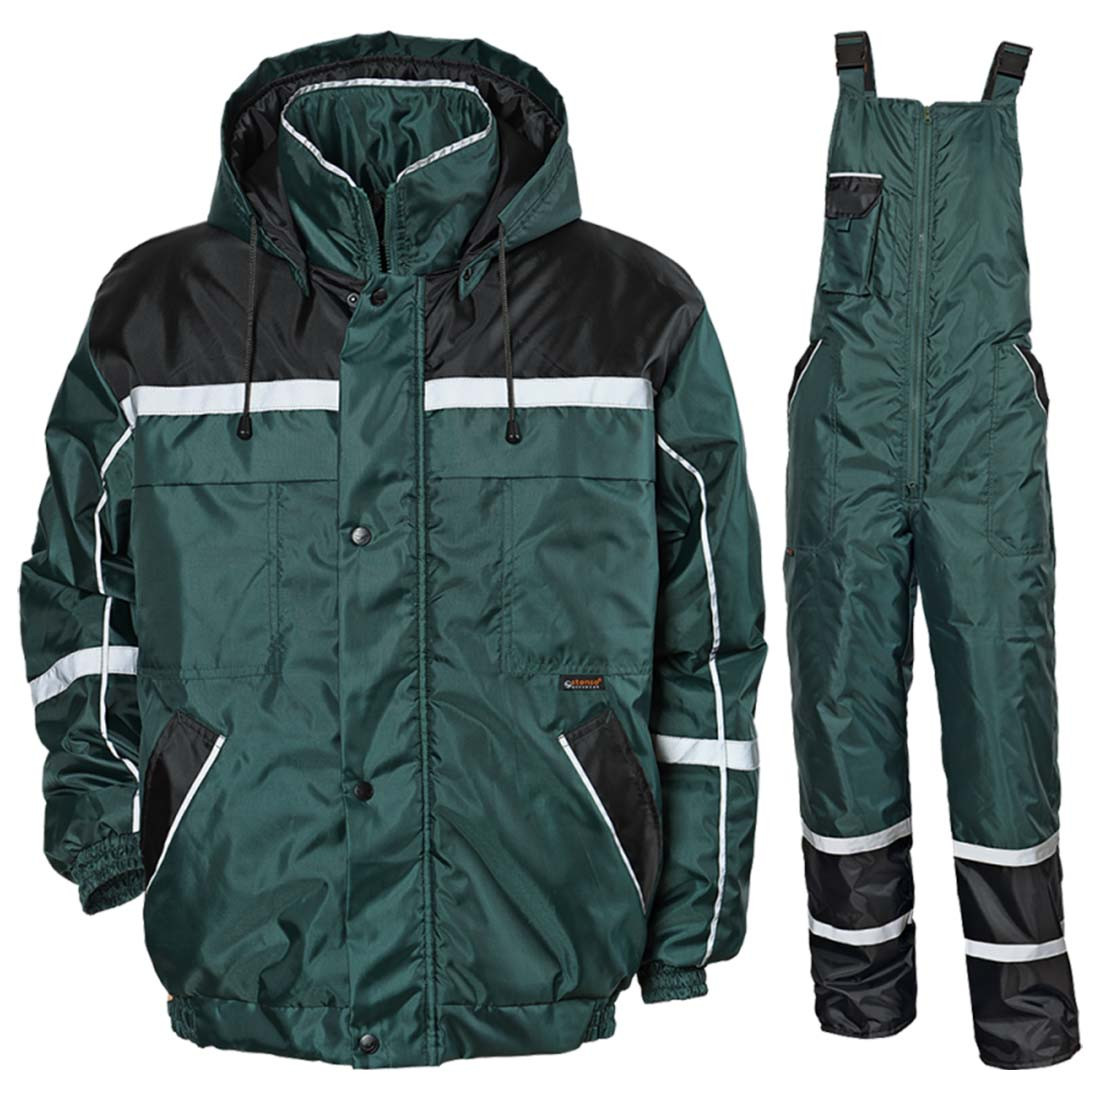 Collins Winter Work Suit - Safetywear